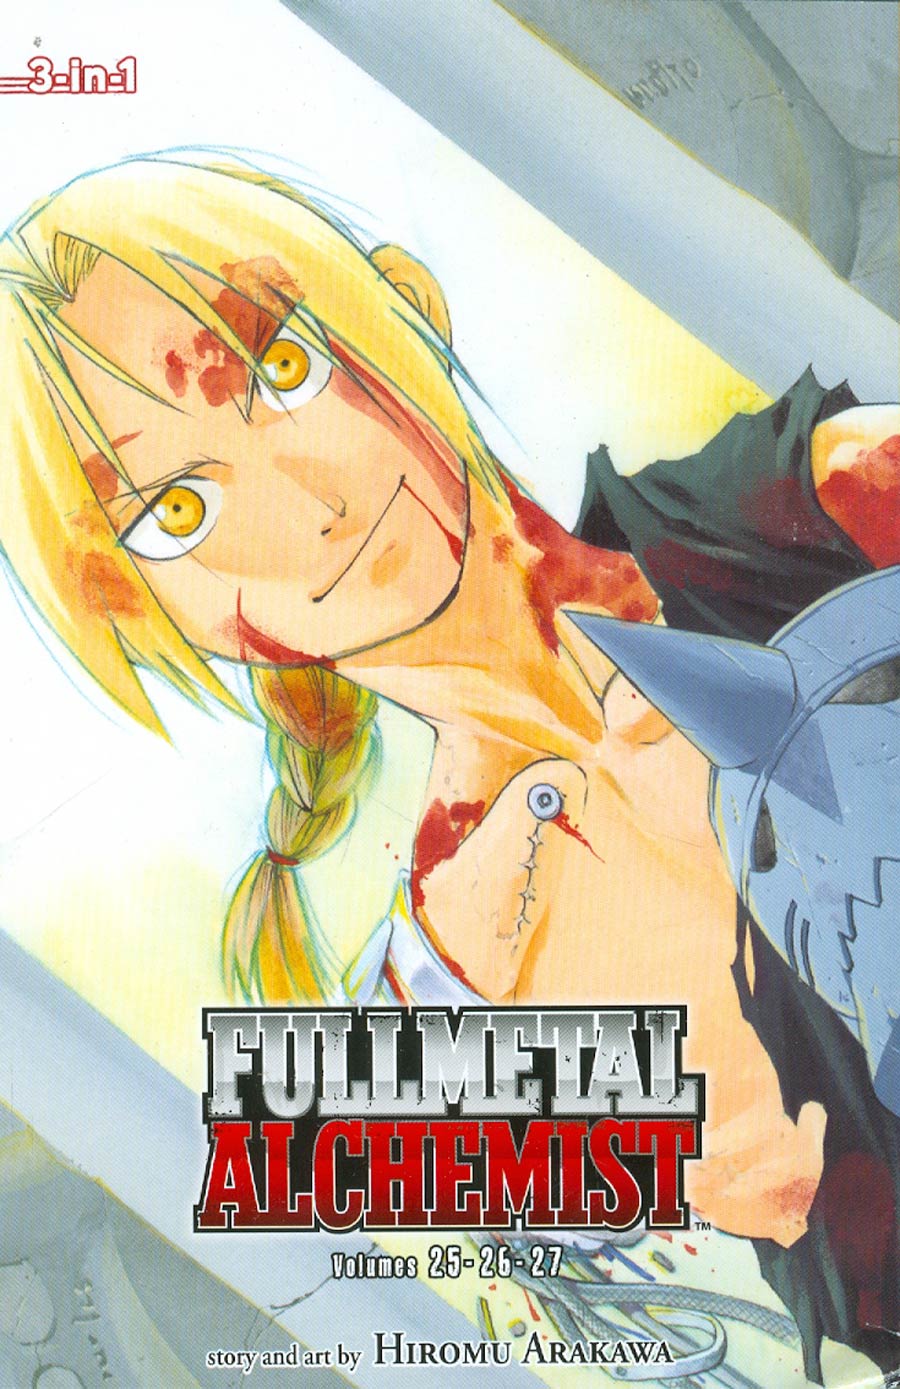 Fullmetal Alchemist 3-In-1 Edition Vols 25 - 26 - 27 TP